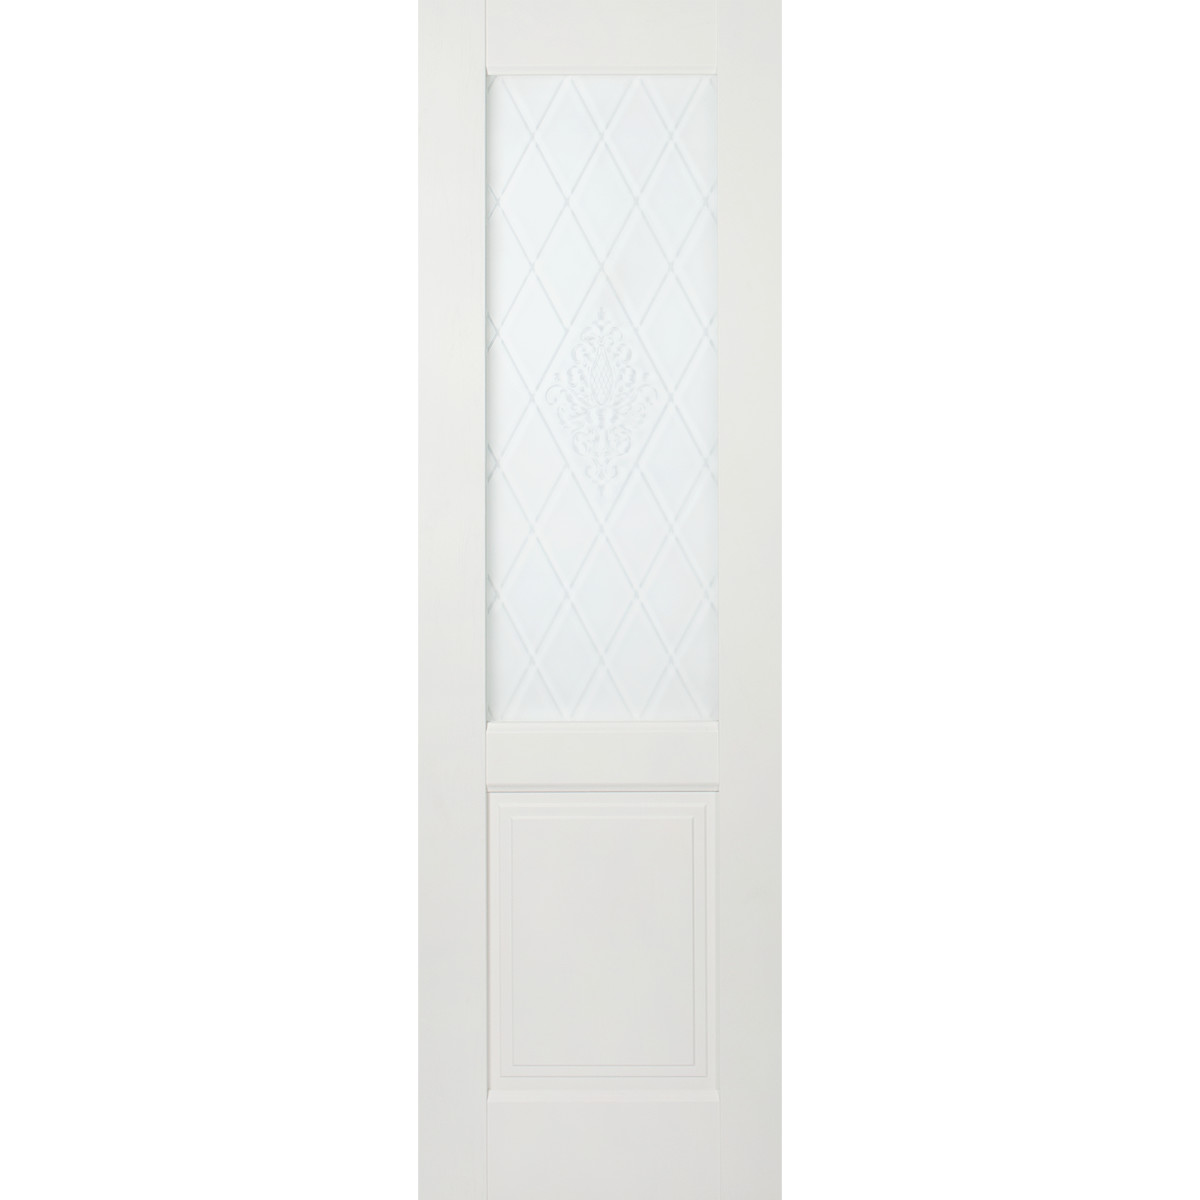 Дверь межкомнатная остеклённая Кристал 60x200 см цвет пломбир